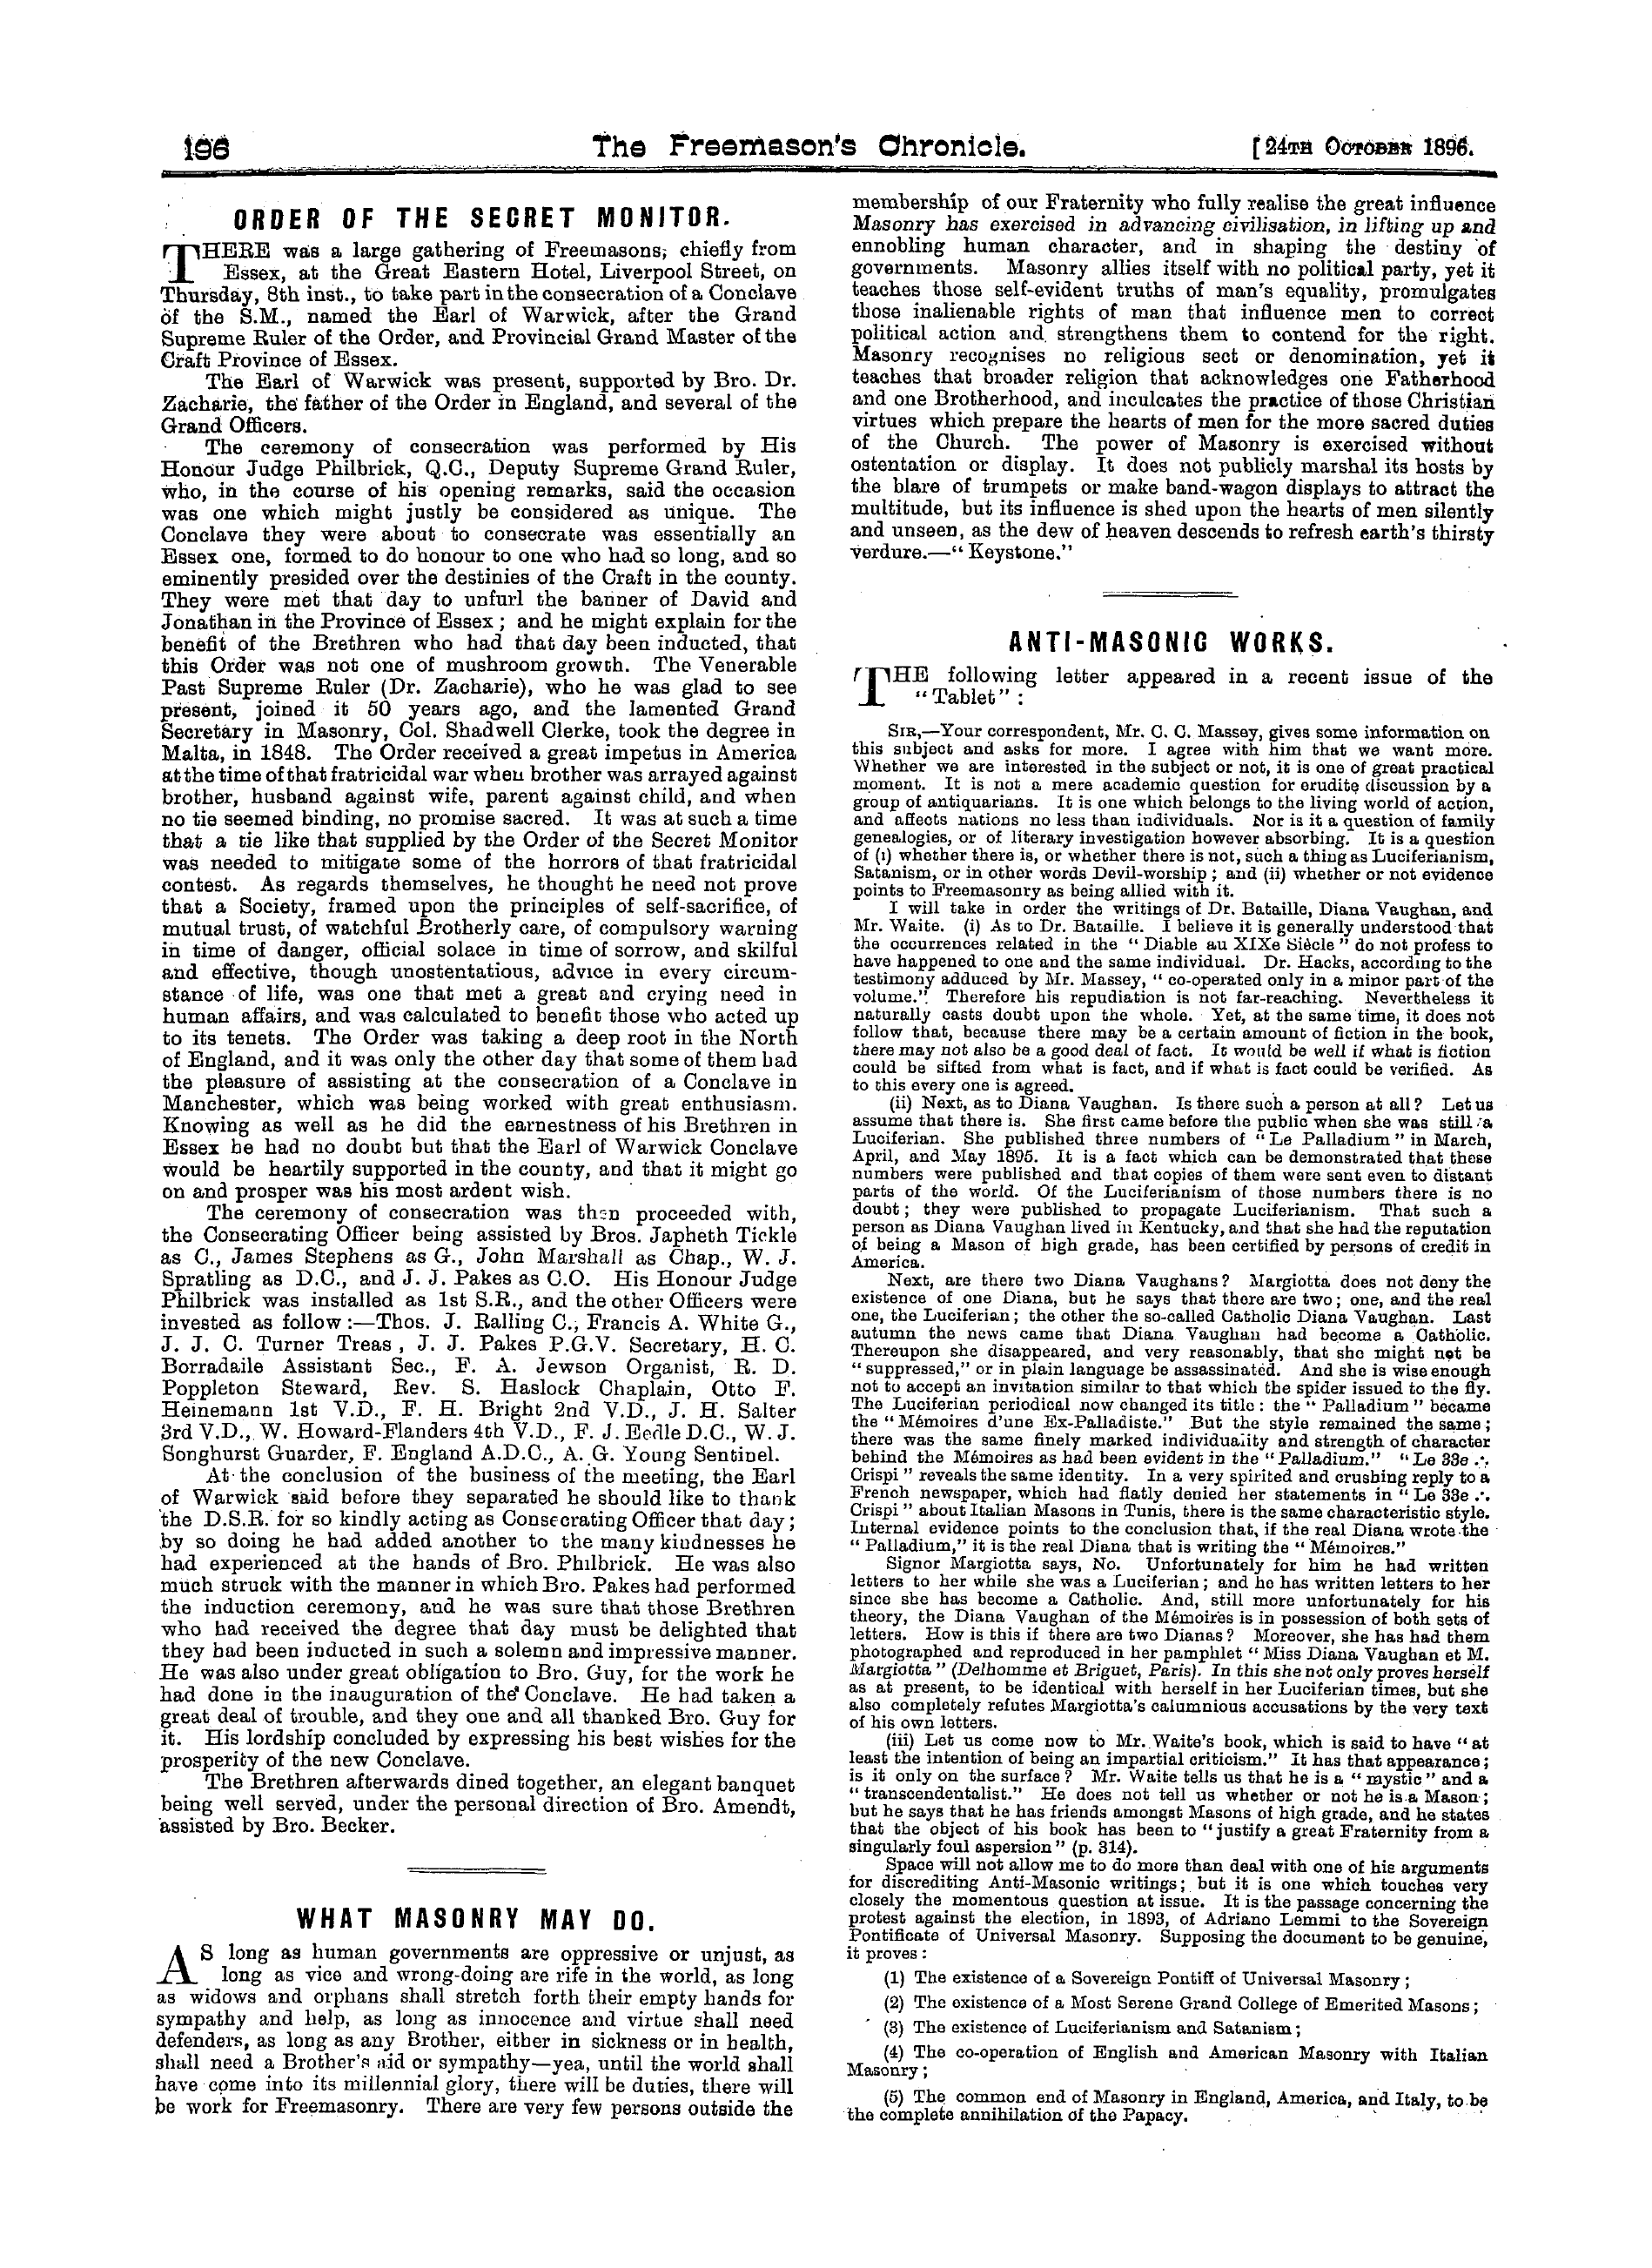 The Freemason's Chronicle: 1896-10-24 - What Masonry May Do.